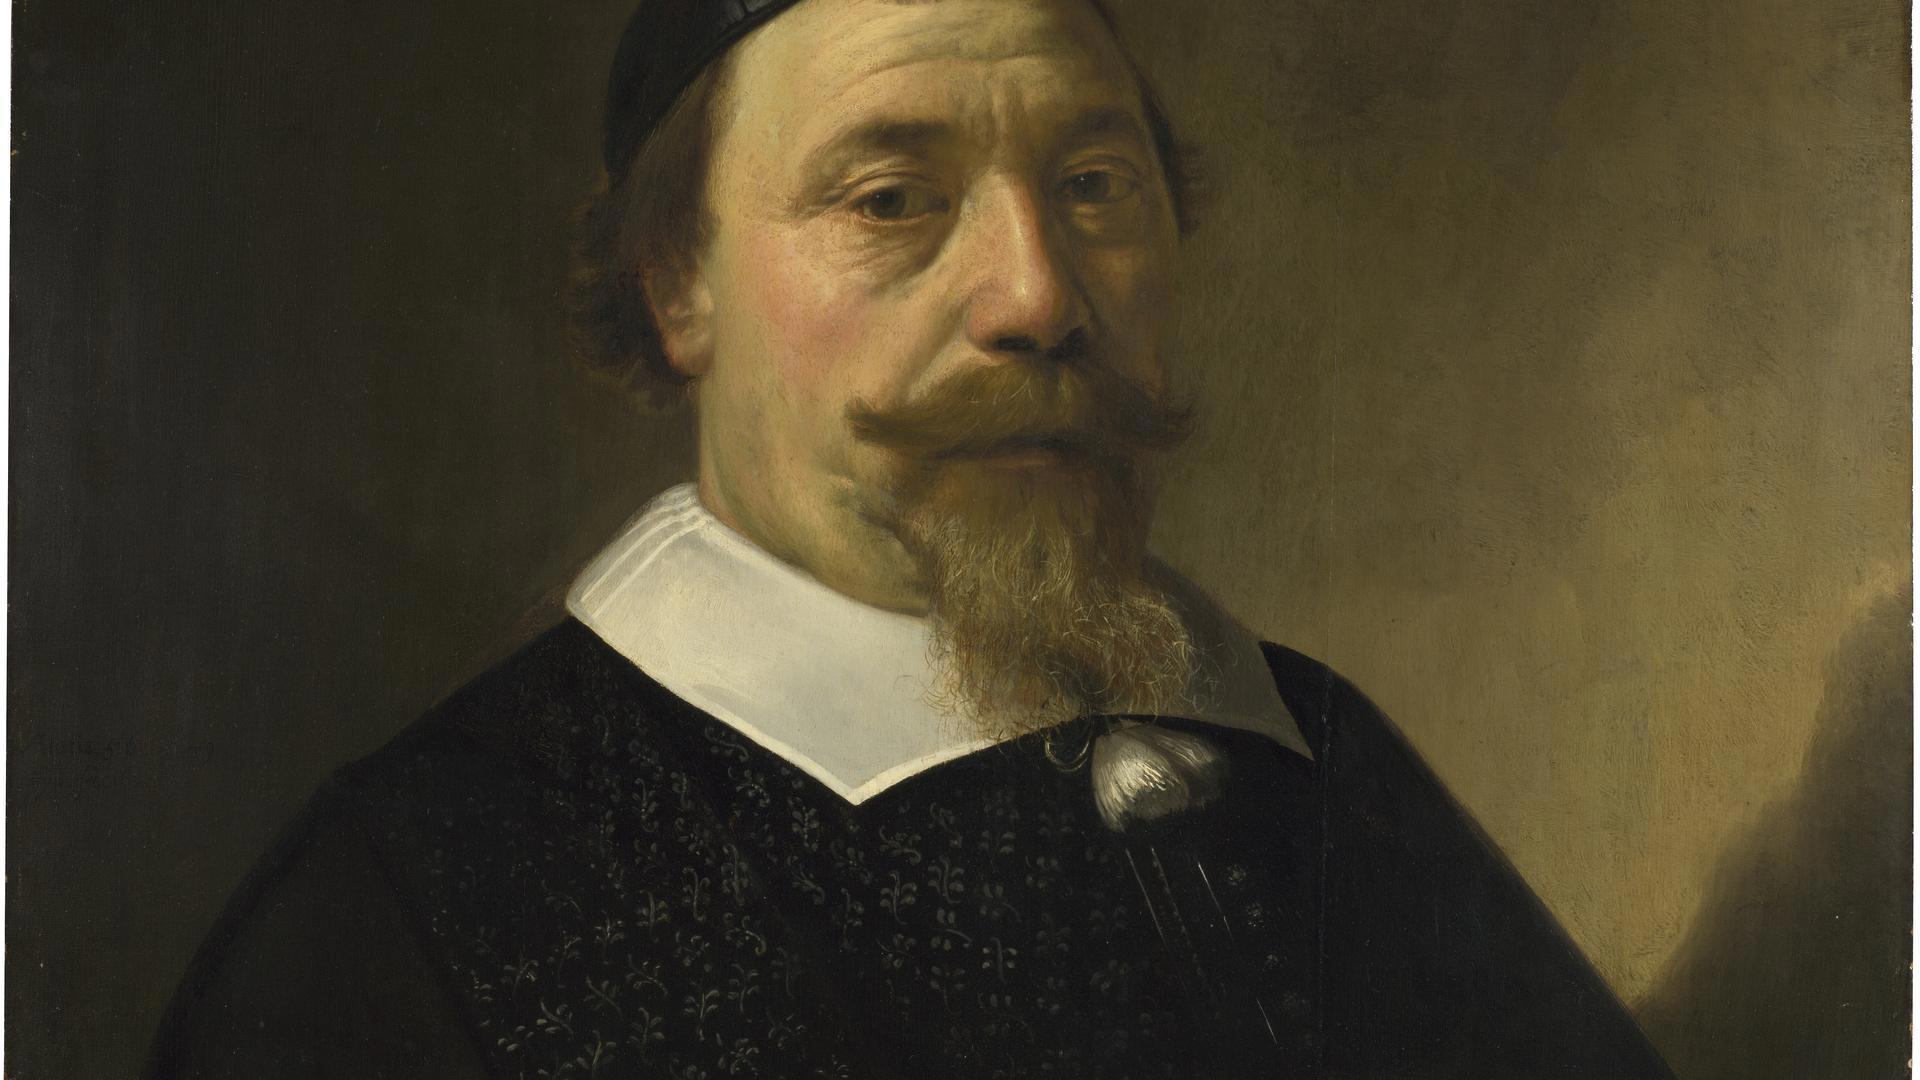 Portrait of Cornelis van Someren by Aelbert Cuyp